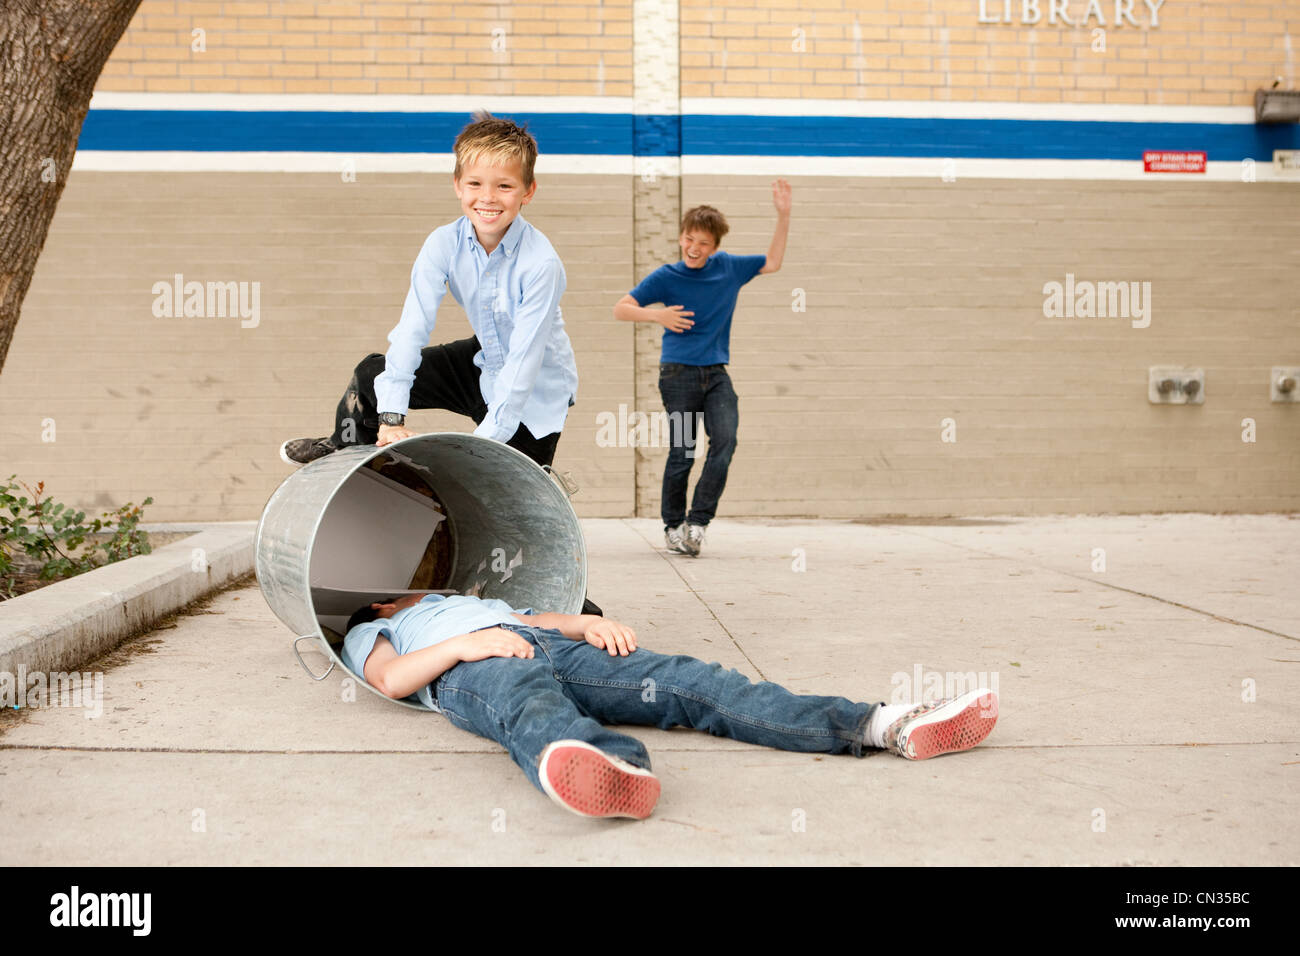 Dos muchachos la intimidación de otro, un niño en el cubo de la basura Foto de stock